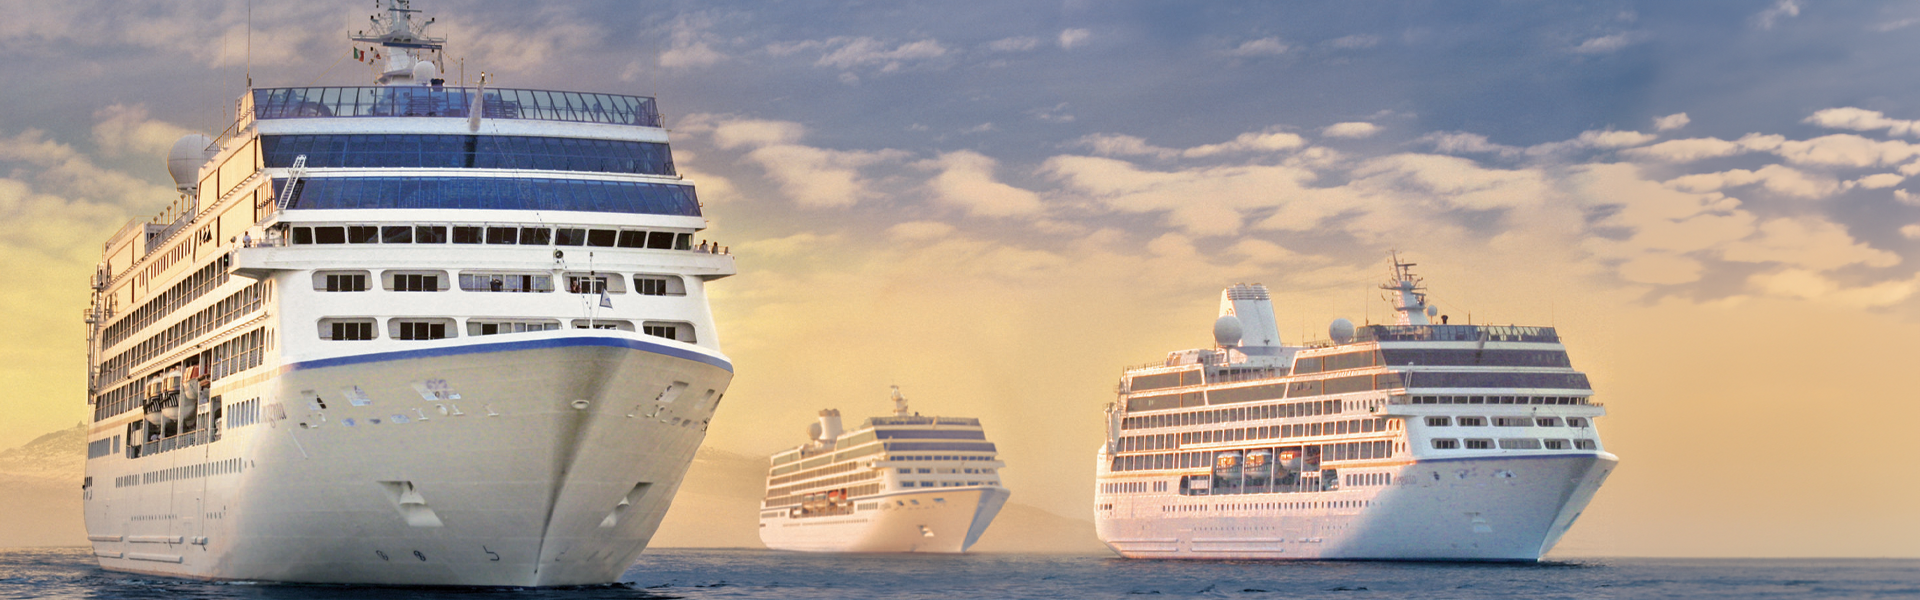 Solca gli Oceani e scopri le mete più ricercate al Mondo con Oceania Cruises